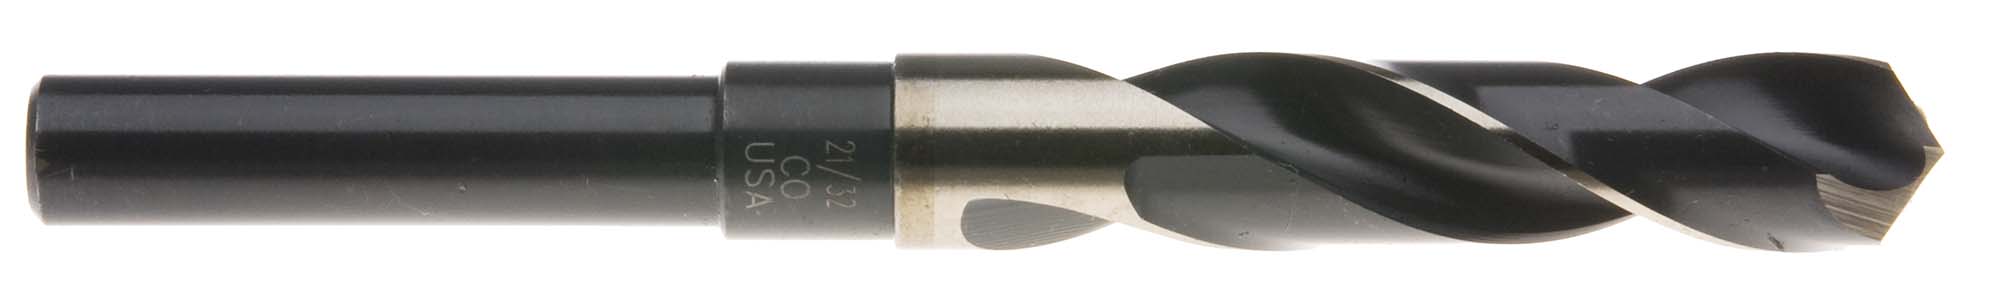 11/16" S and D Drill (1/2" shank) USA Cobalt